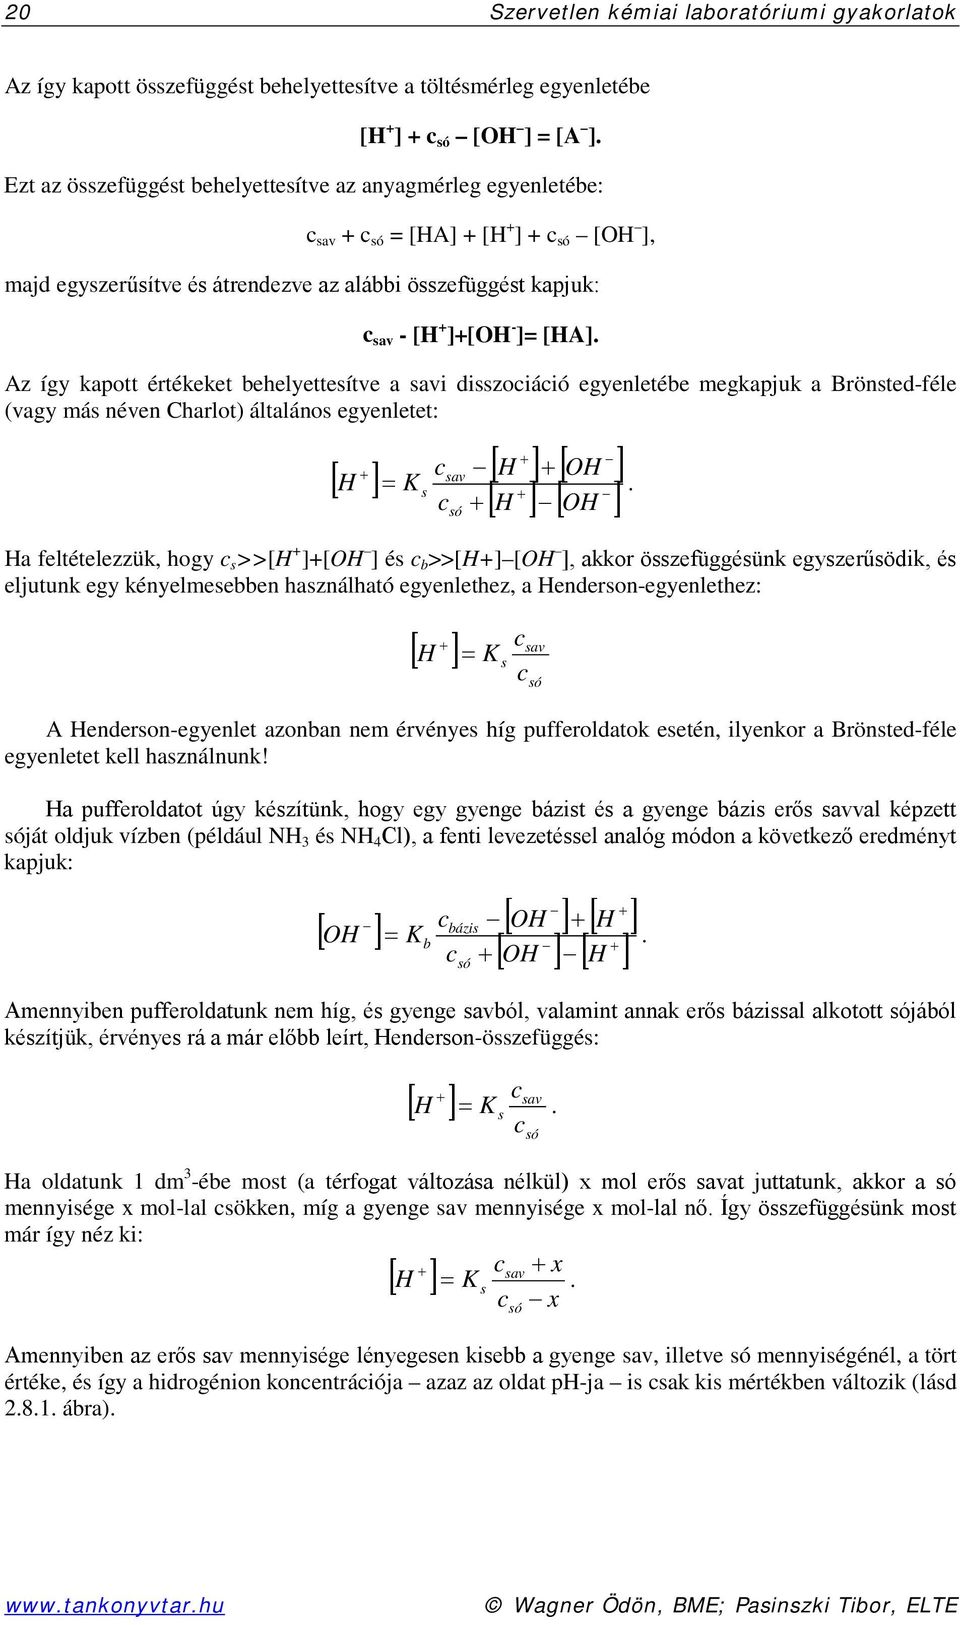 Az így kapott értékeket behelyettesítve a savi disszociáció egyenletébe megkapjuk a Brönsted-féle (vagy más néven Charlot) általános egyenletet: + + csav [ ] [ H ] + [ OH ] H = K + c + [ H ] [ OH ] s.